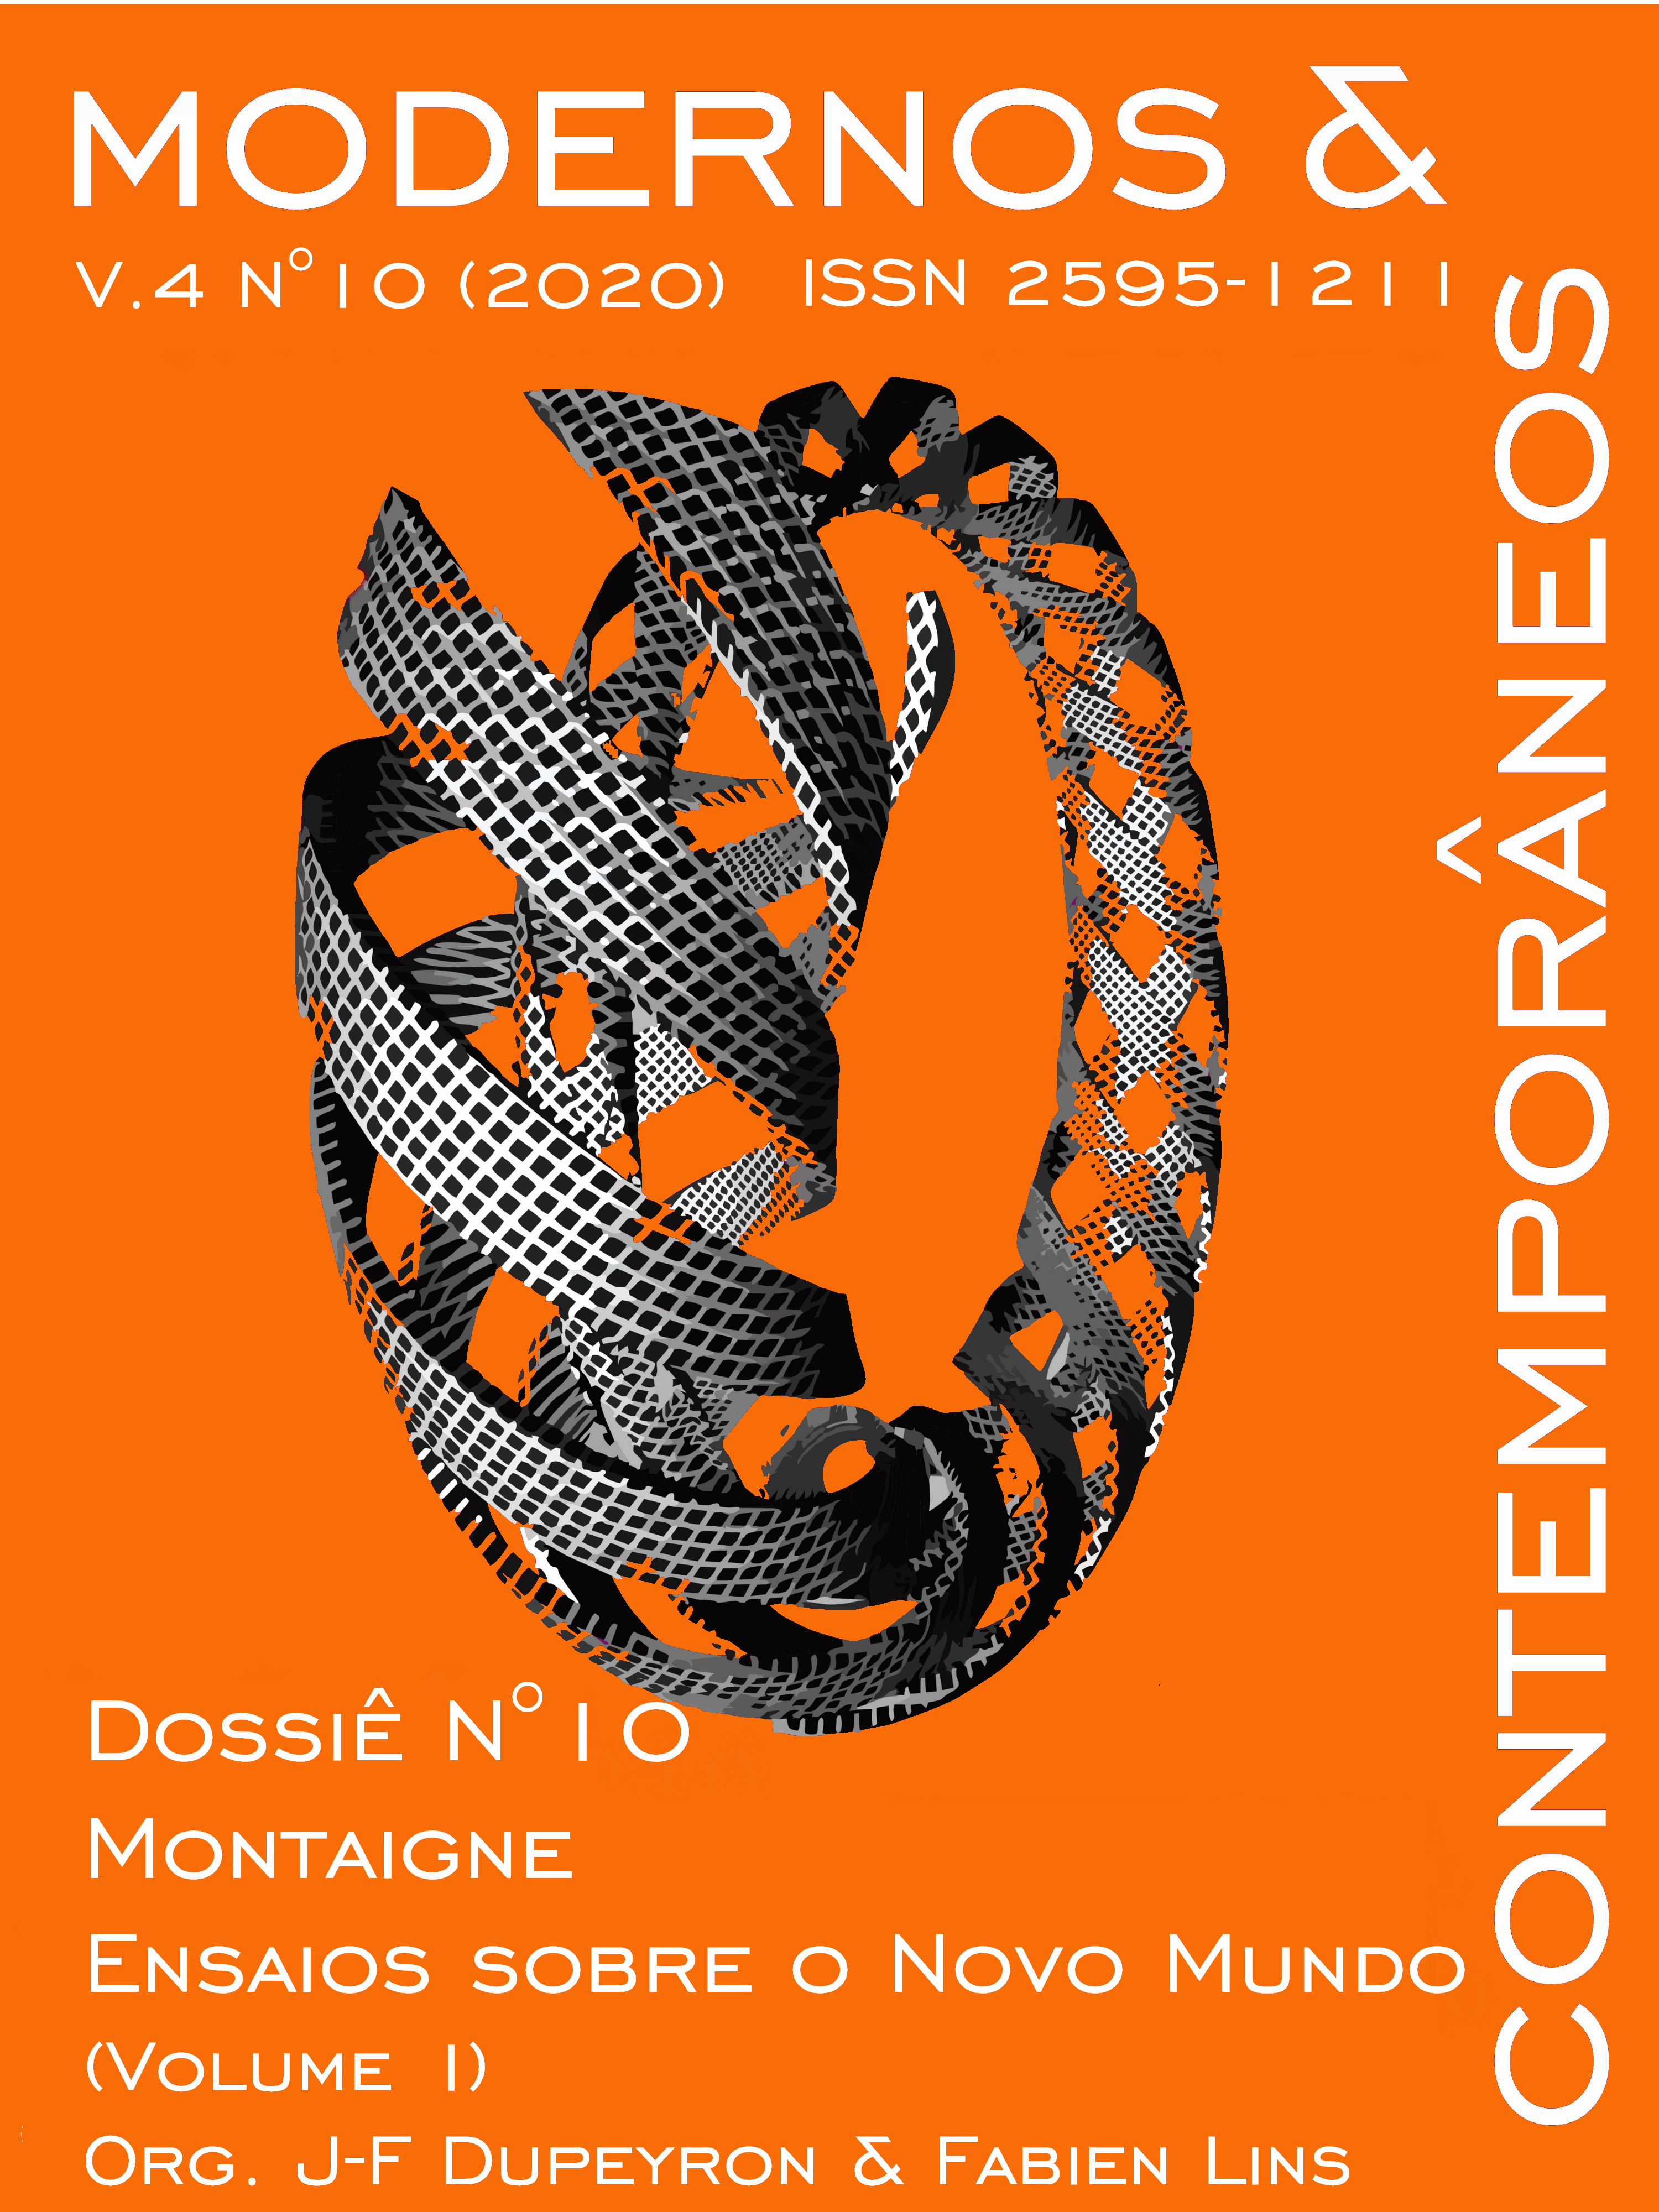 					Visualizar v. 4 n. 10 (2020): Montaigne. Ensaios sobre o Novo Mundo (vol.1); Montaigne. Essays on the New World (vol. 1)
				